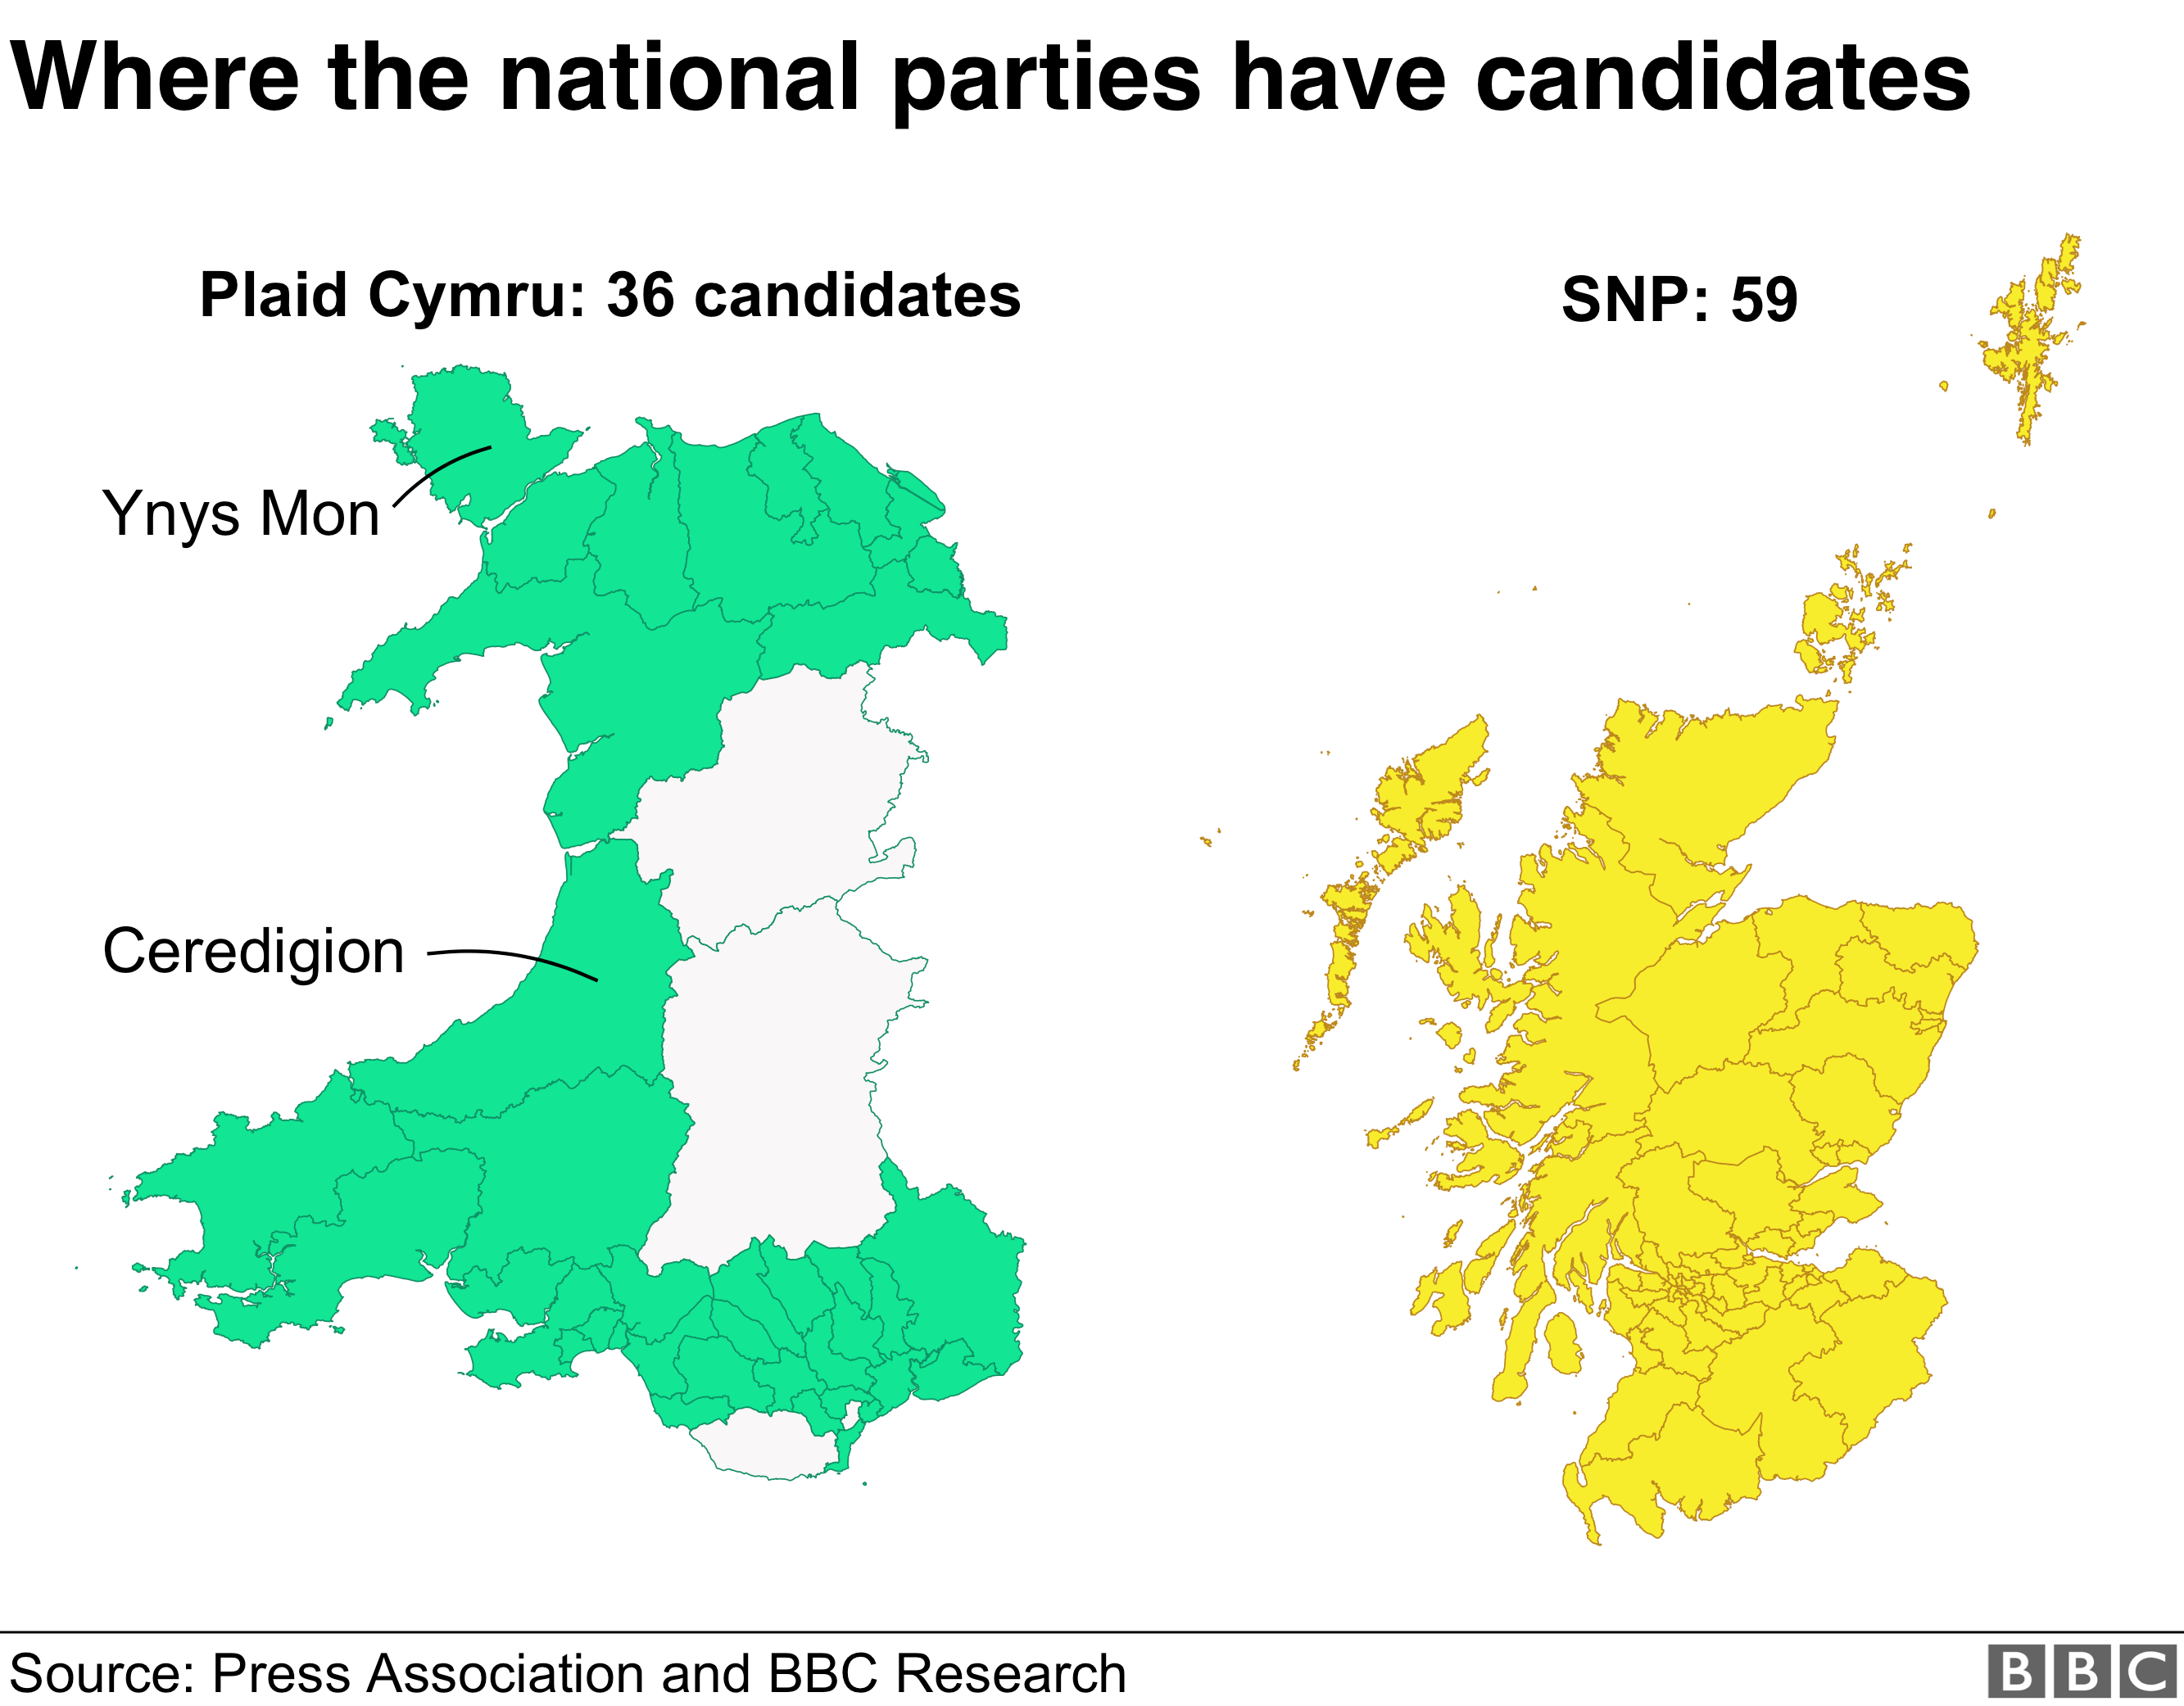 Plaid Cymru выставляет 36 кандидатов, в то время как SNP имеет 59 - покрывая все места в Шотландии